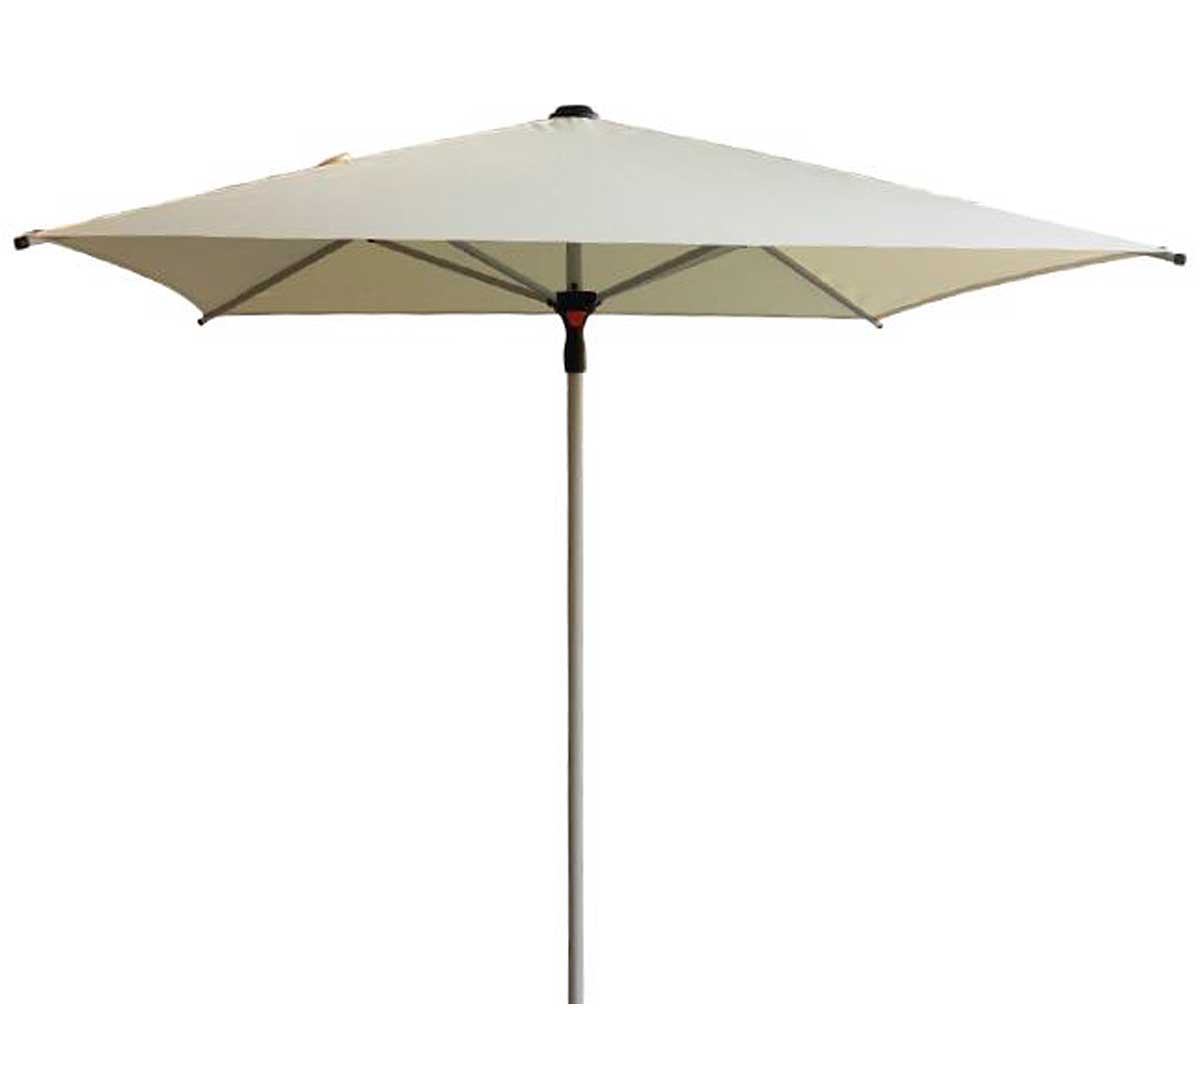 conva-parasol-aluminio-heavy-duty-875-01